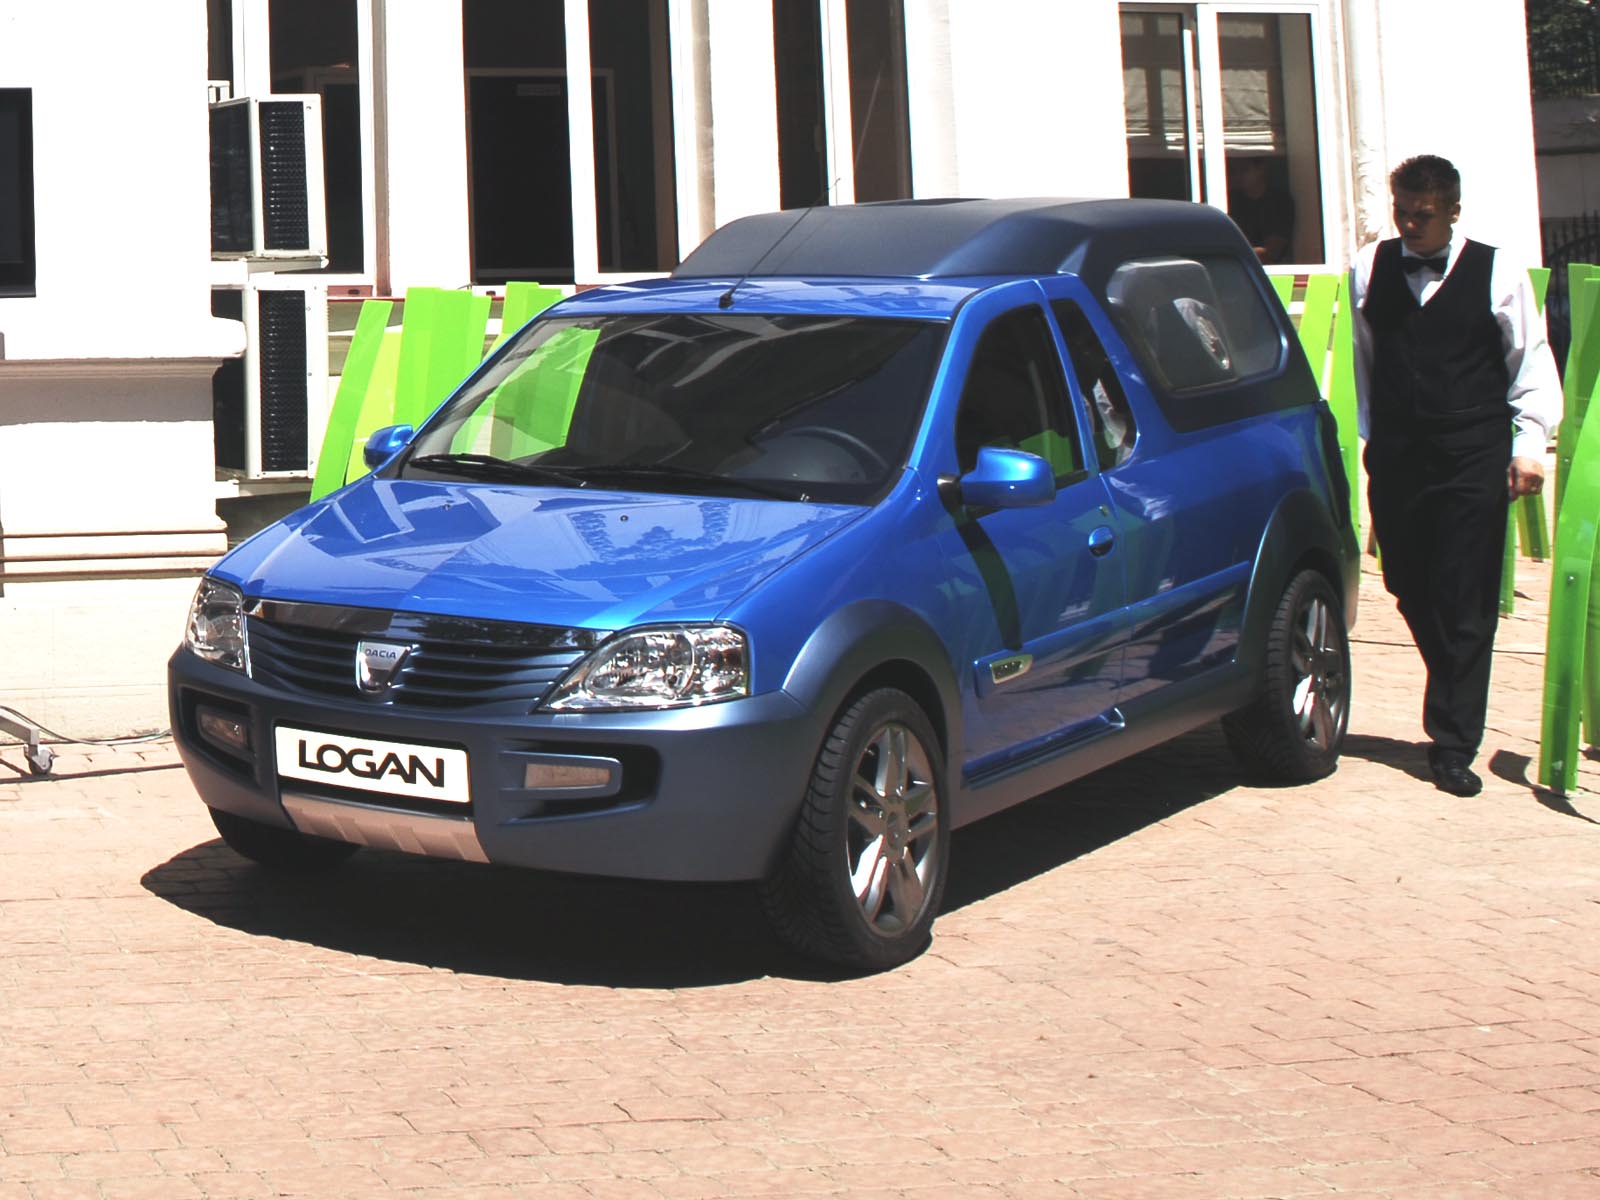 Dacia Logan pick-up concept